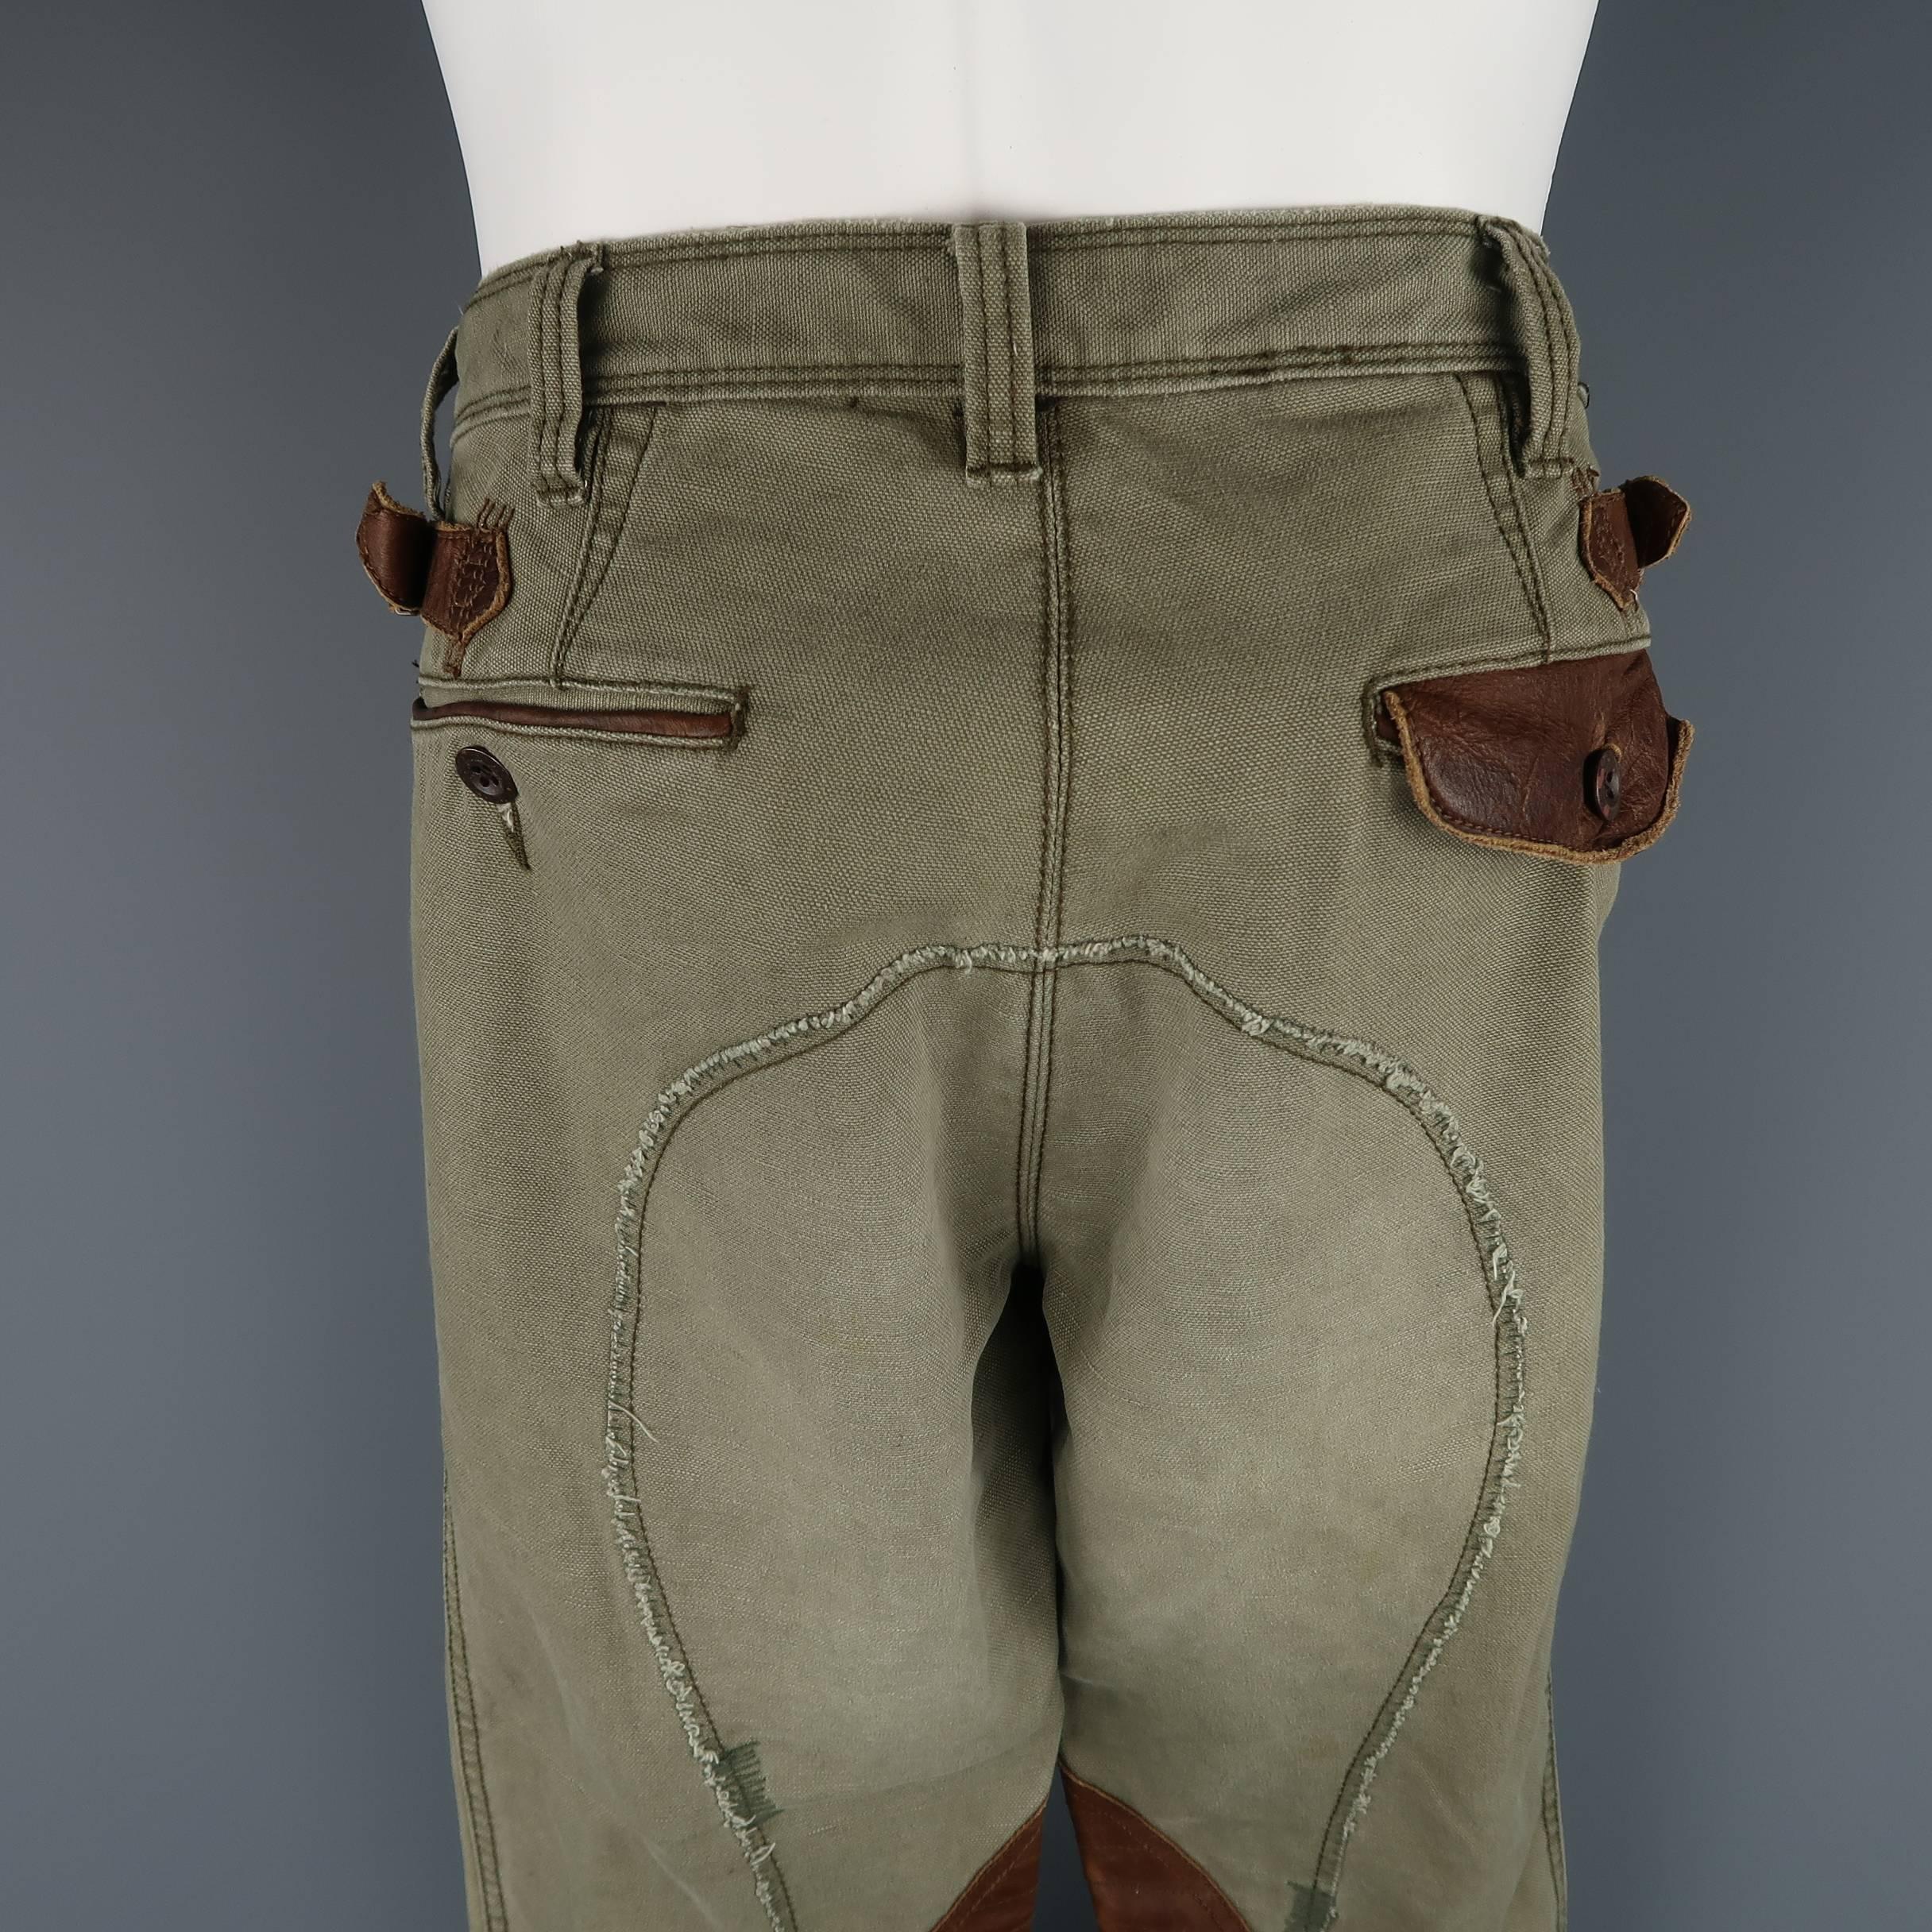 Women's or Men's Men's RALPH LAUREN Size 32 Olive Canvas Tan Leather Panel Belt Tab Utility Pants